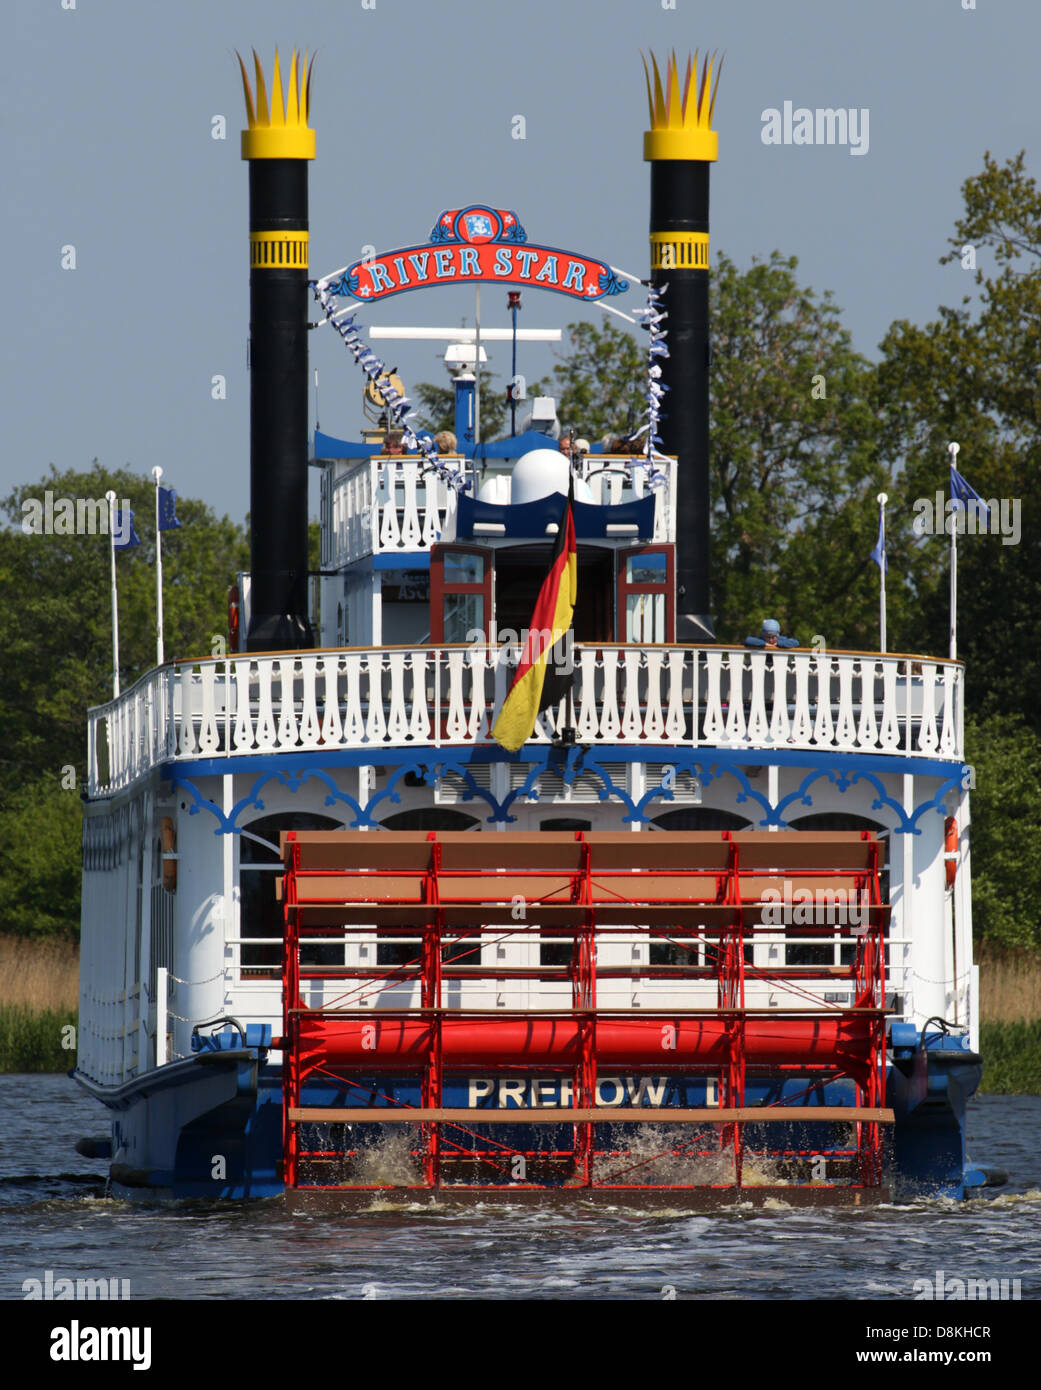 Der Mississippi-Dampfer "River Star" der Reederei Poschke beginnt eine Tour  von Bodden Hafen von Prerow, Deutschland, 30. Mai 2013. Der "River Star"  bietet tägliche Touren durch den Nationalpark westlichen Bodden der  Pommerschen